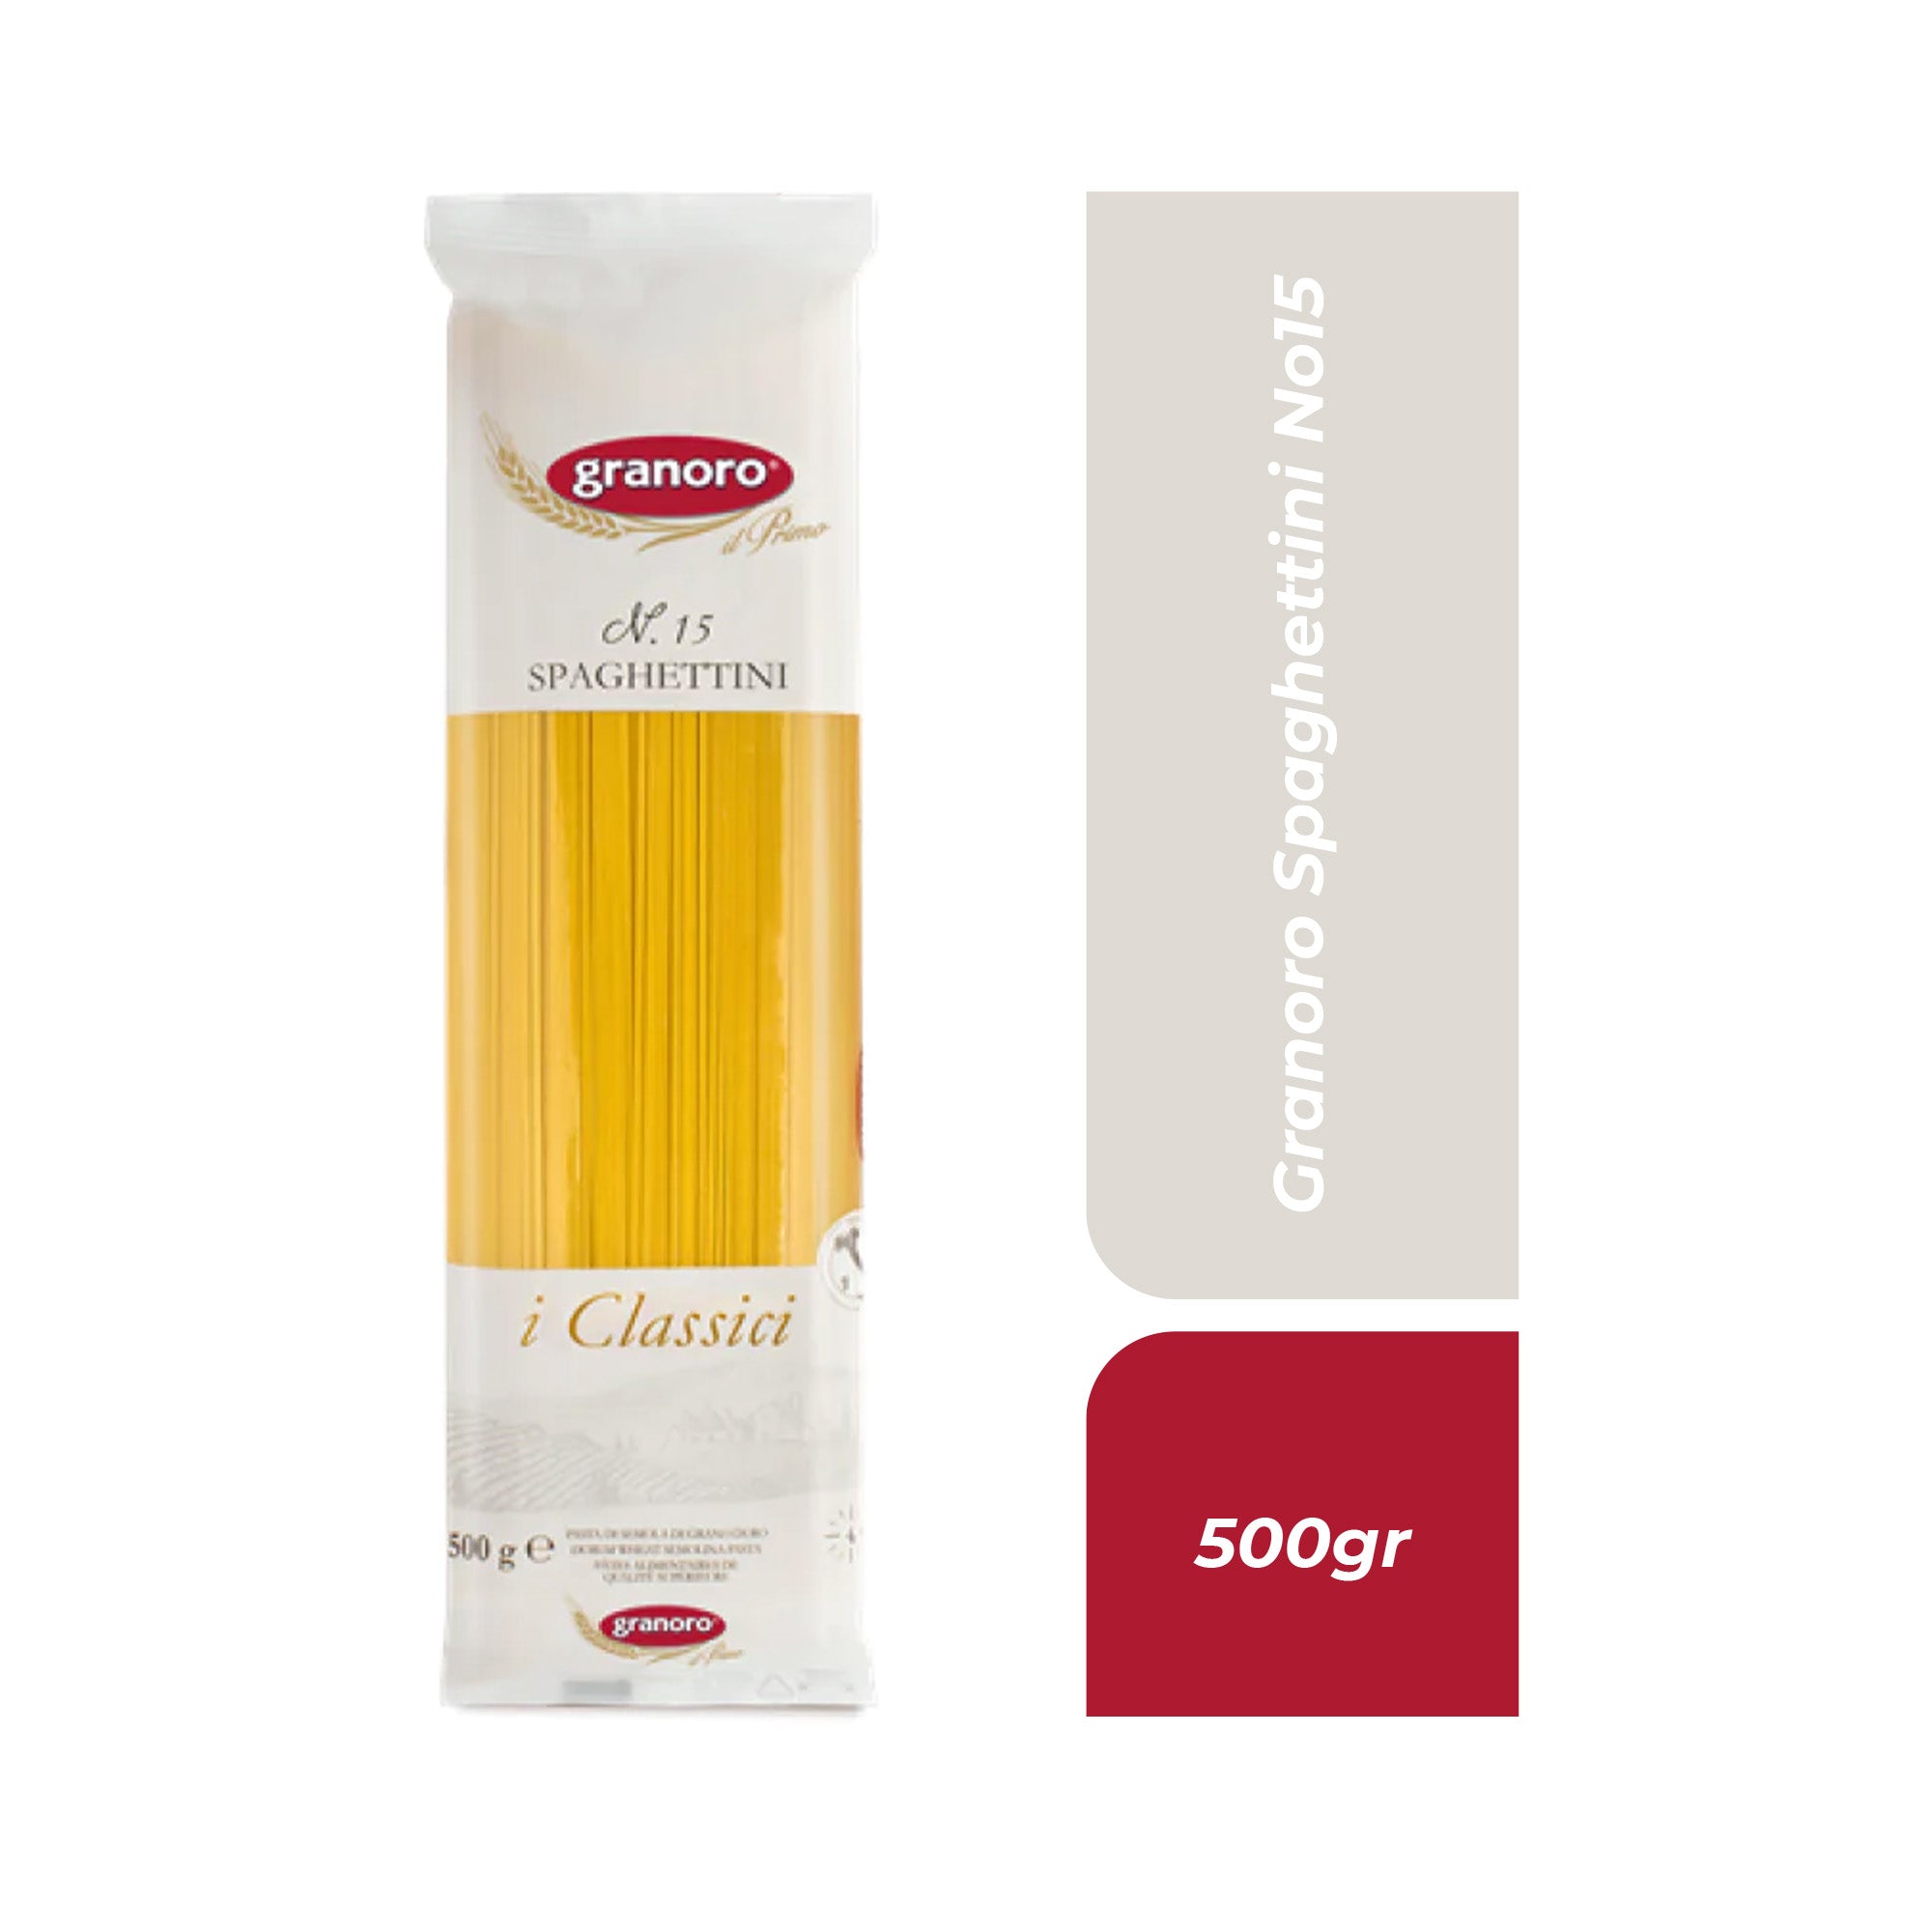 Granoro Spaghettini No15 500gr.